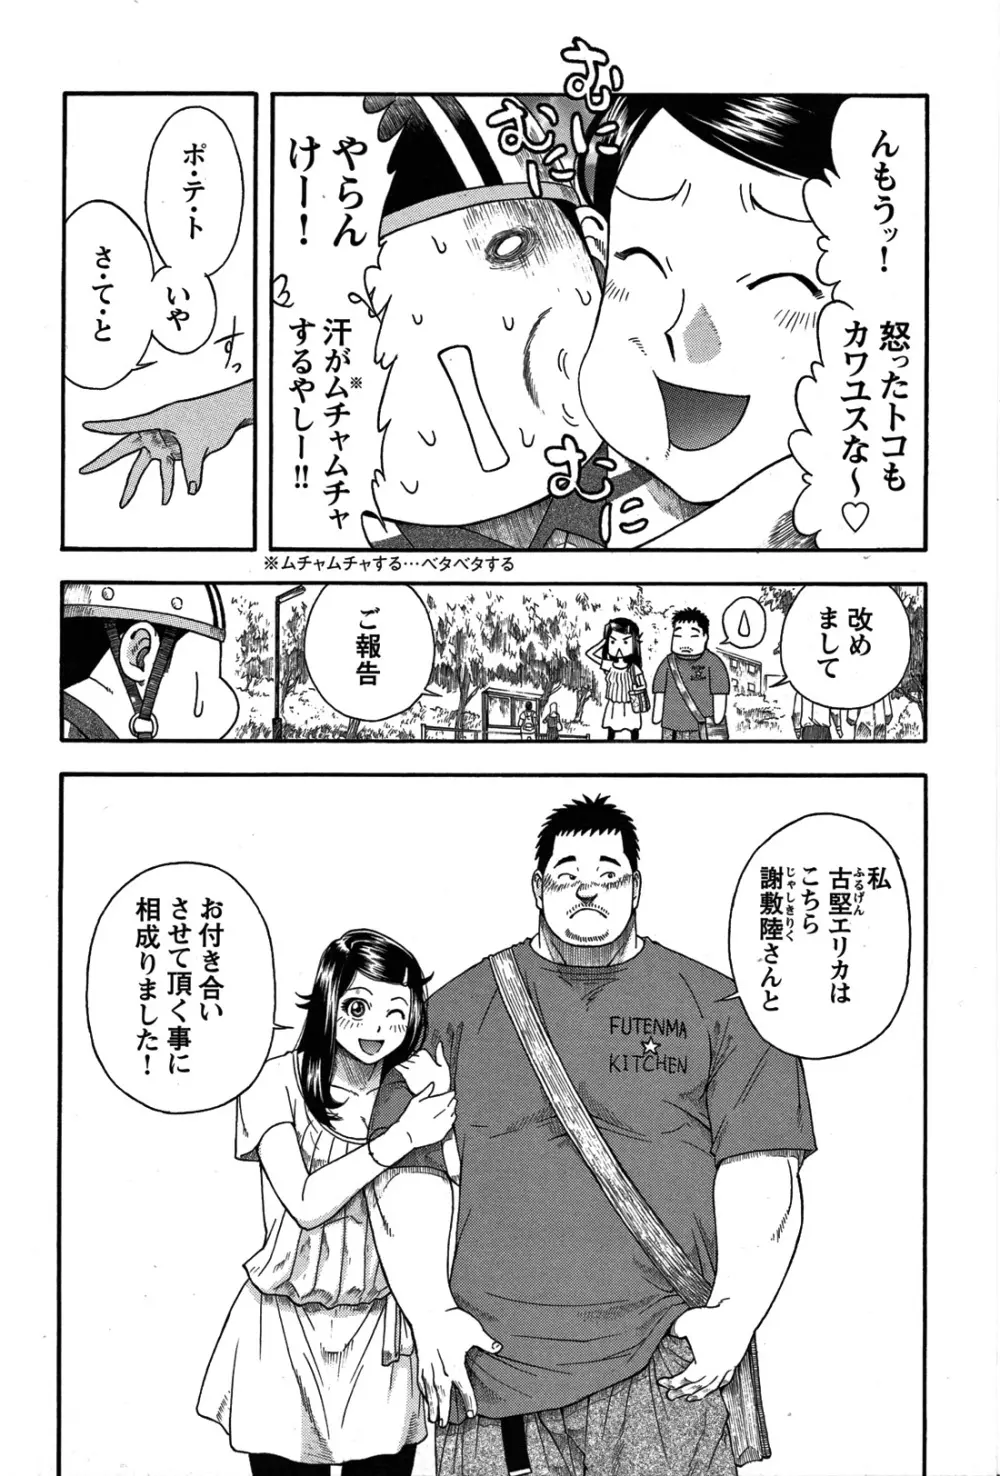 Comic G-men Gaho No.07 26ページ